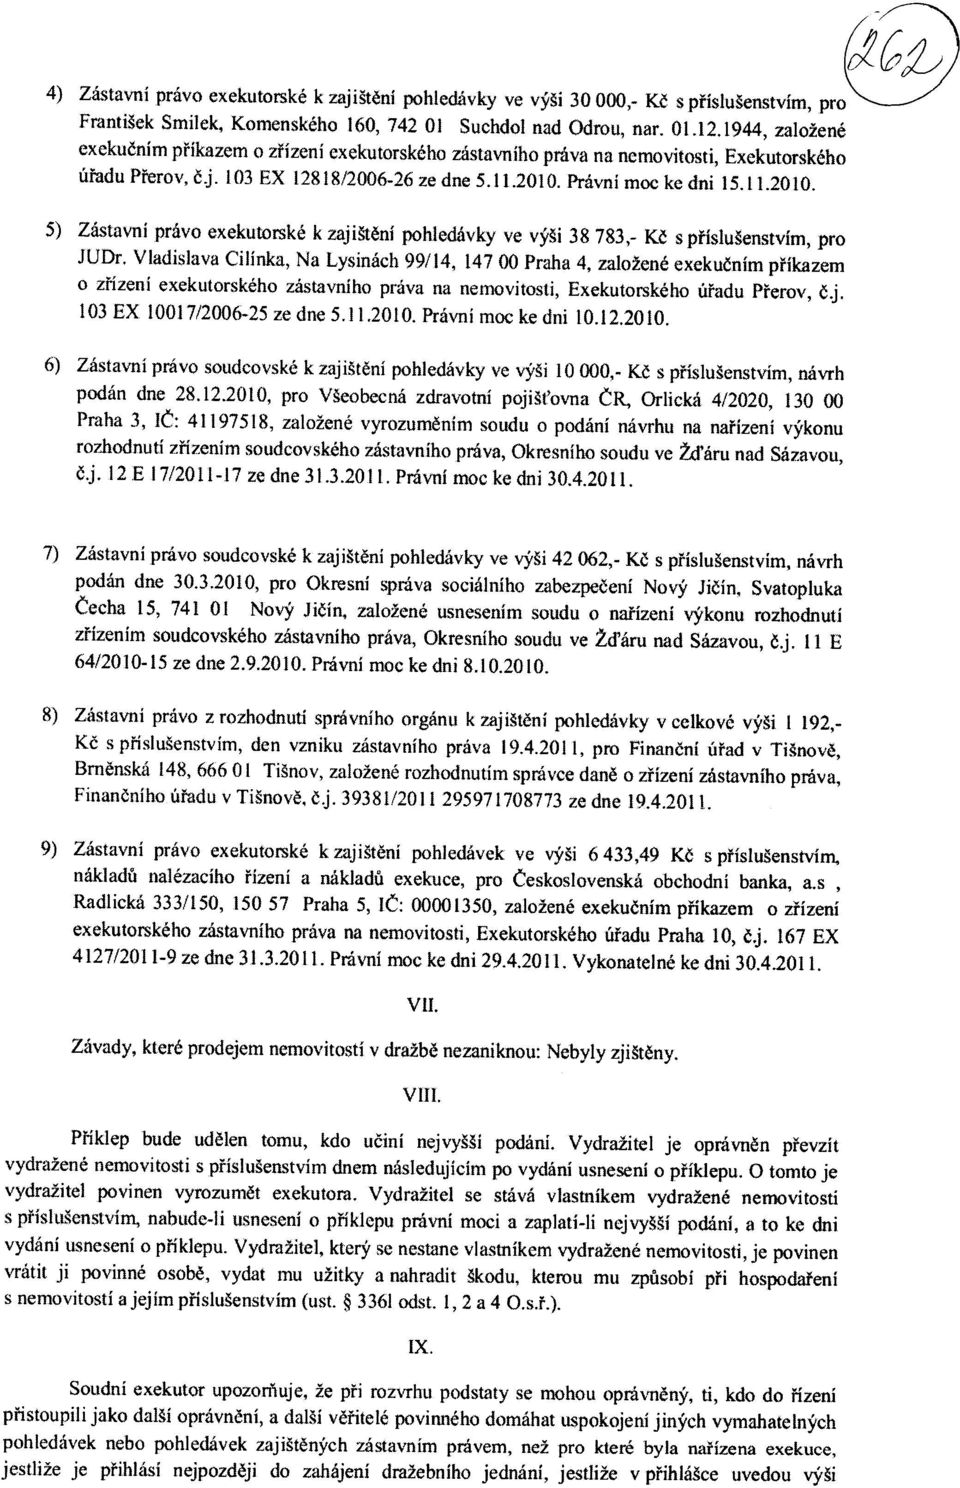 Pravni moc ke dni 15.11.2010. 5) Zastavni pravo exekutorske k zaji t6ni pohledavky ve v' i 38 783,- Kd s pfislugenstvim, pro JUDr.